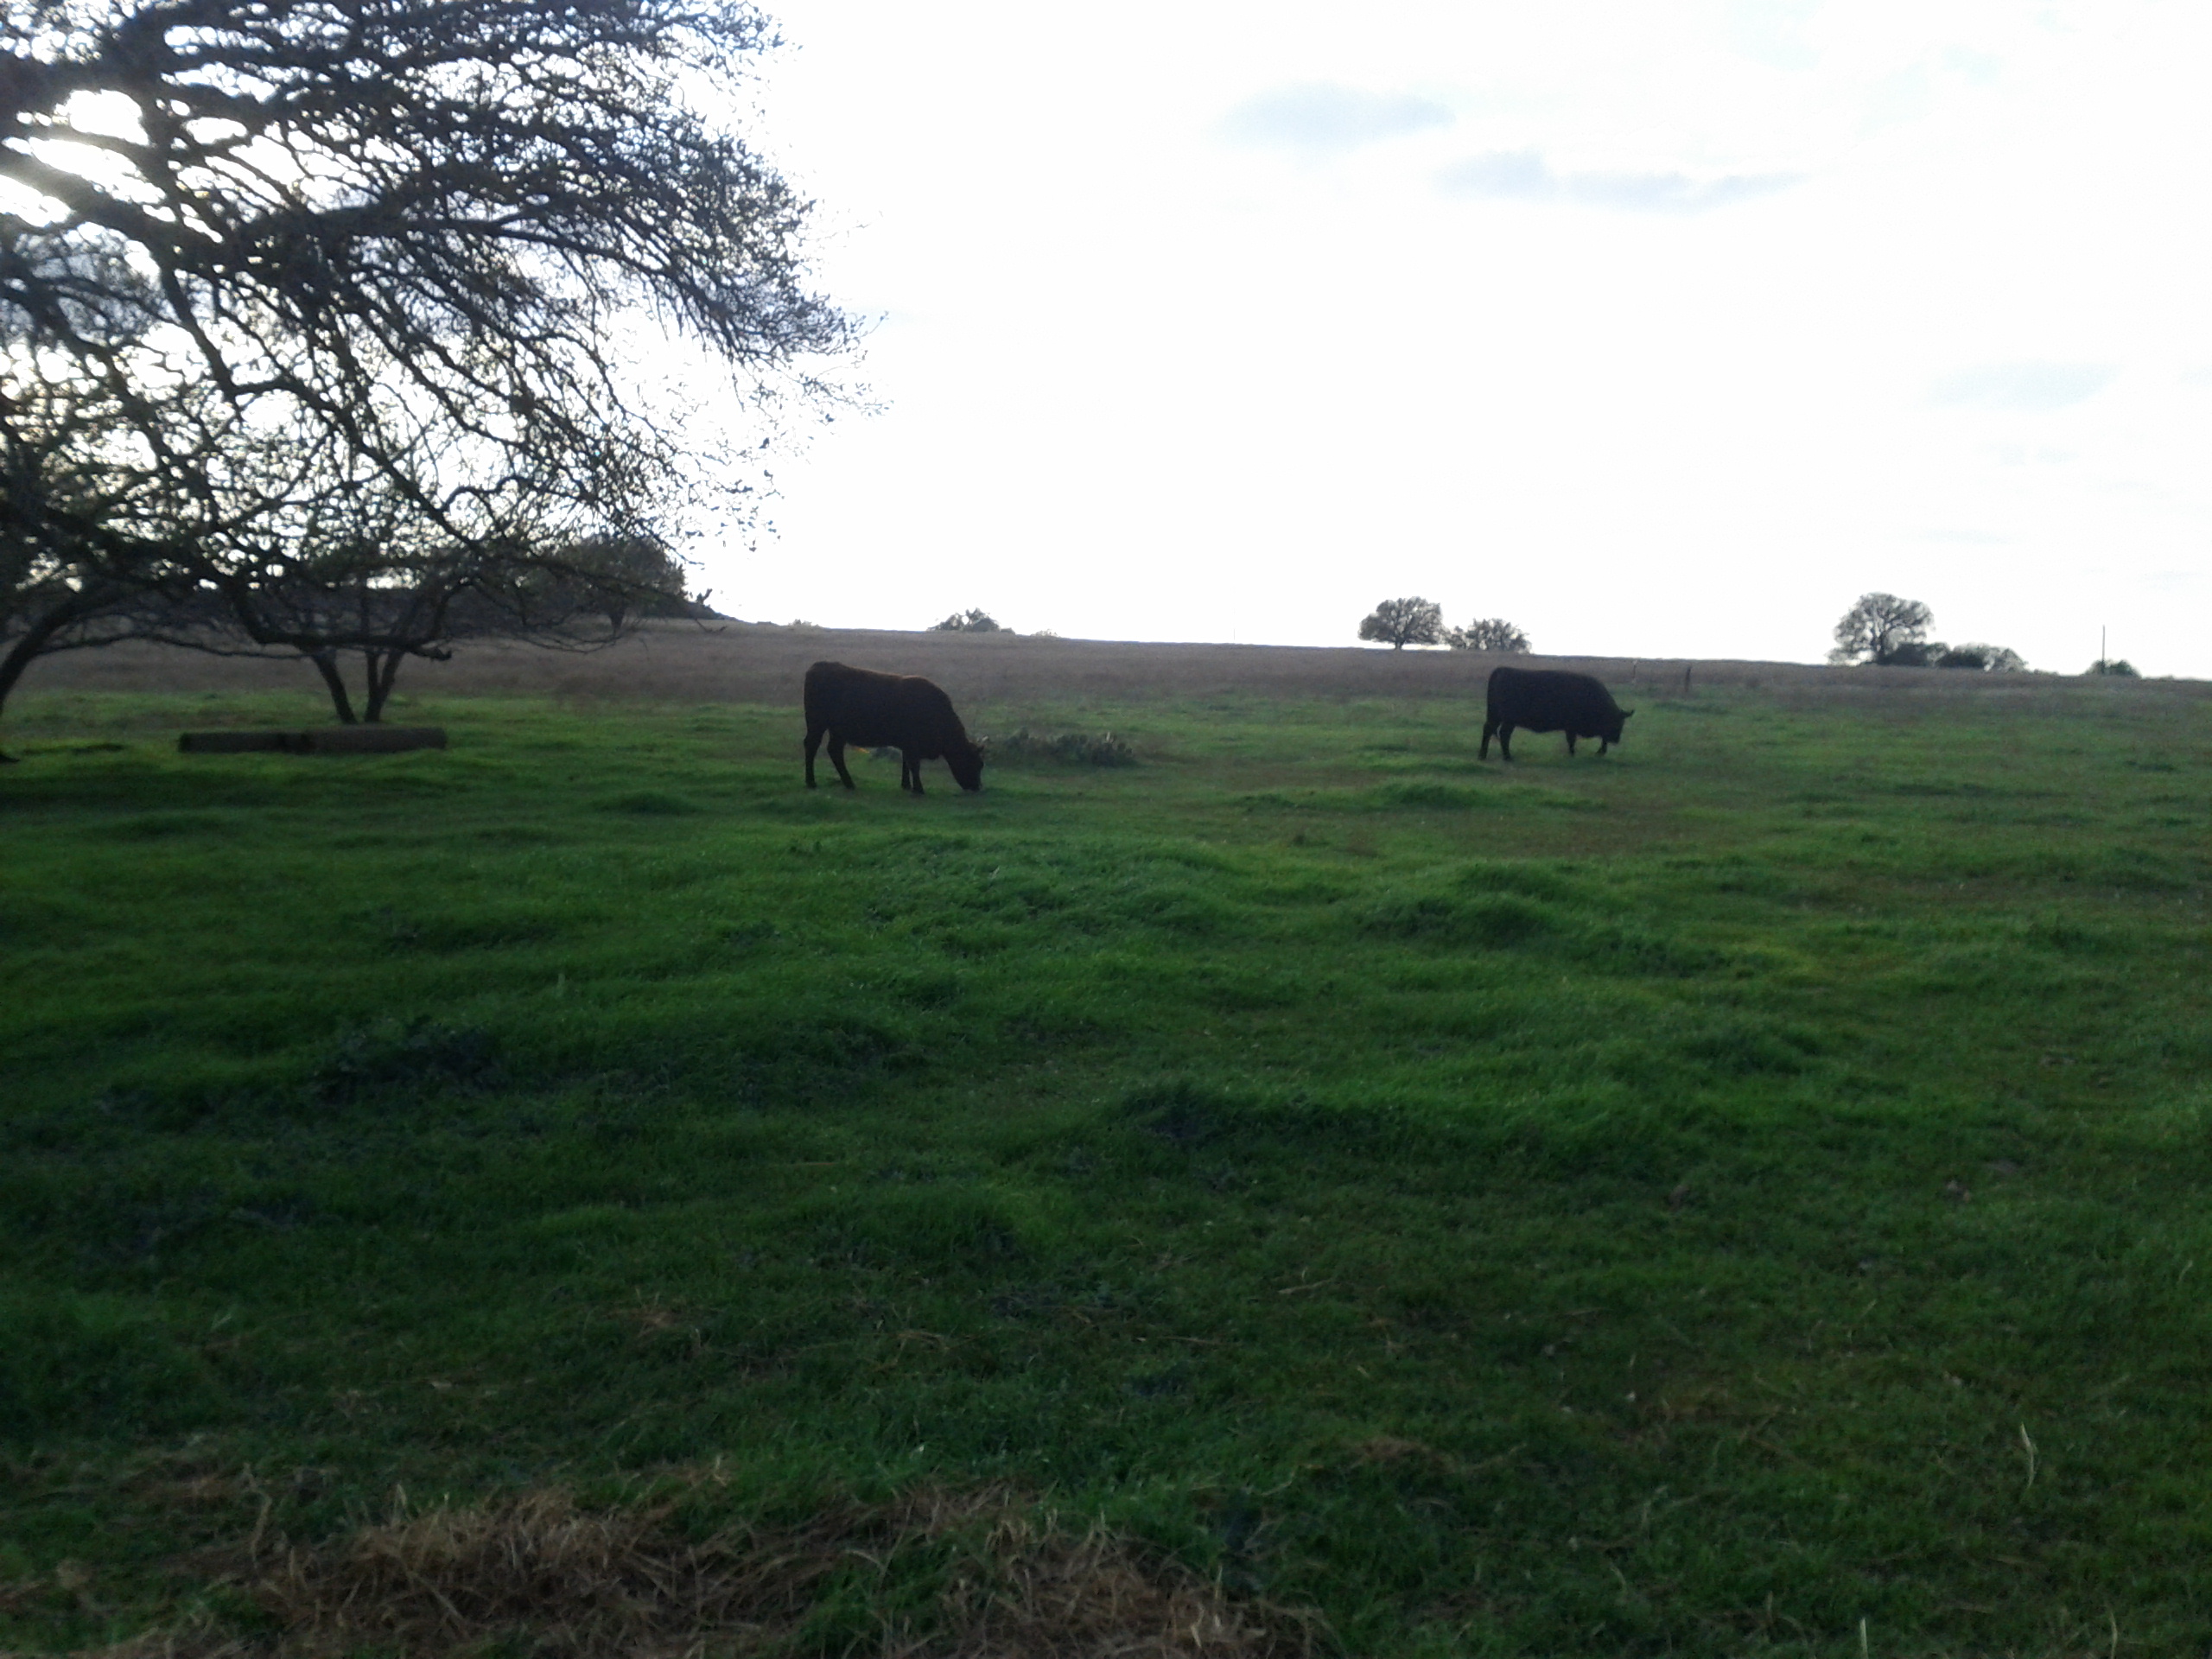 Two cattle grazing fresh green grass